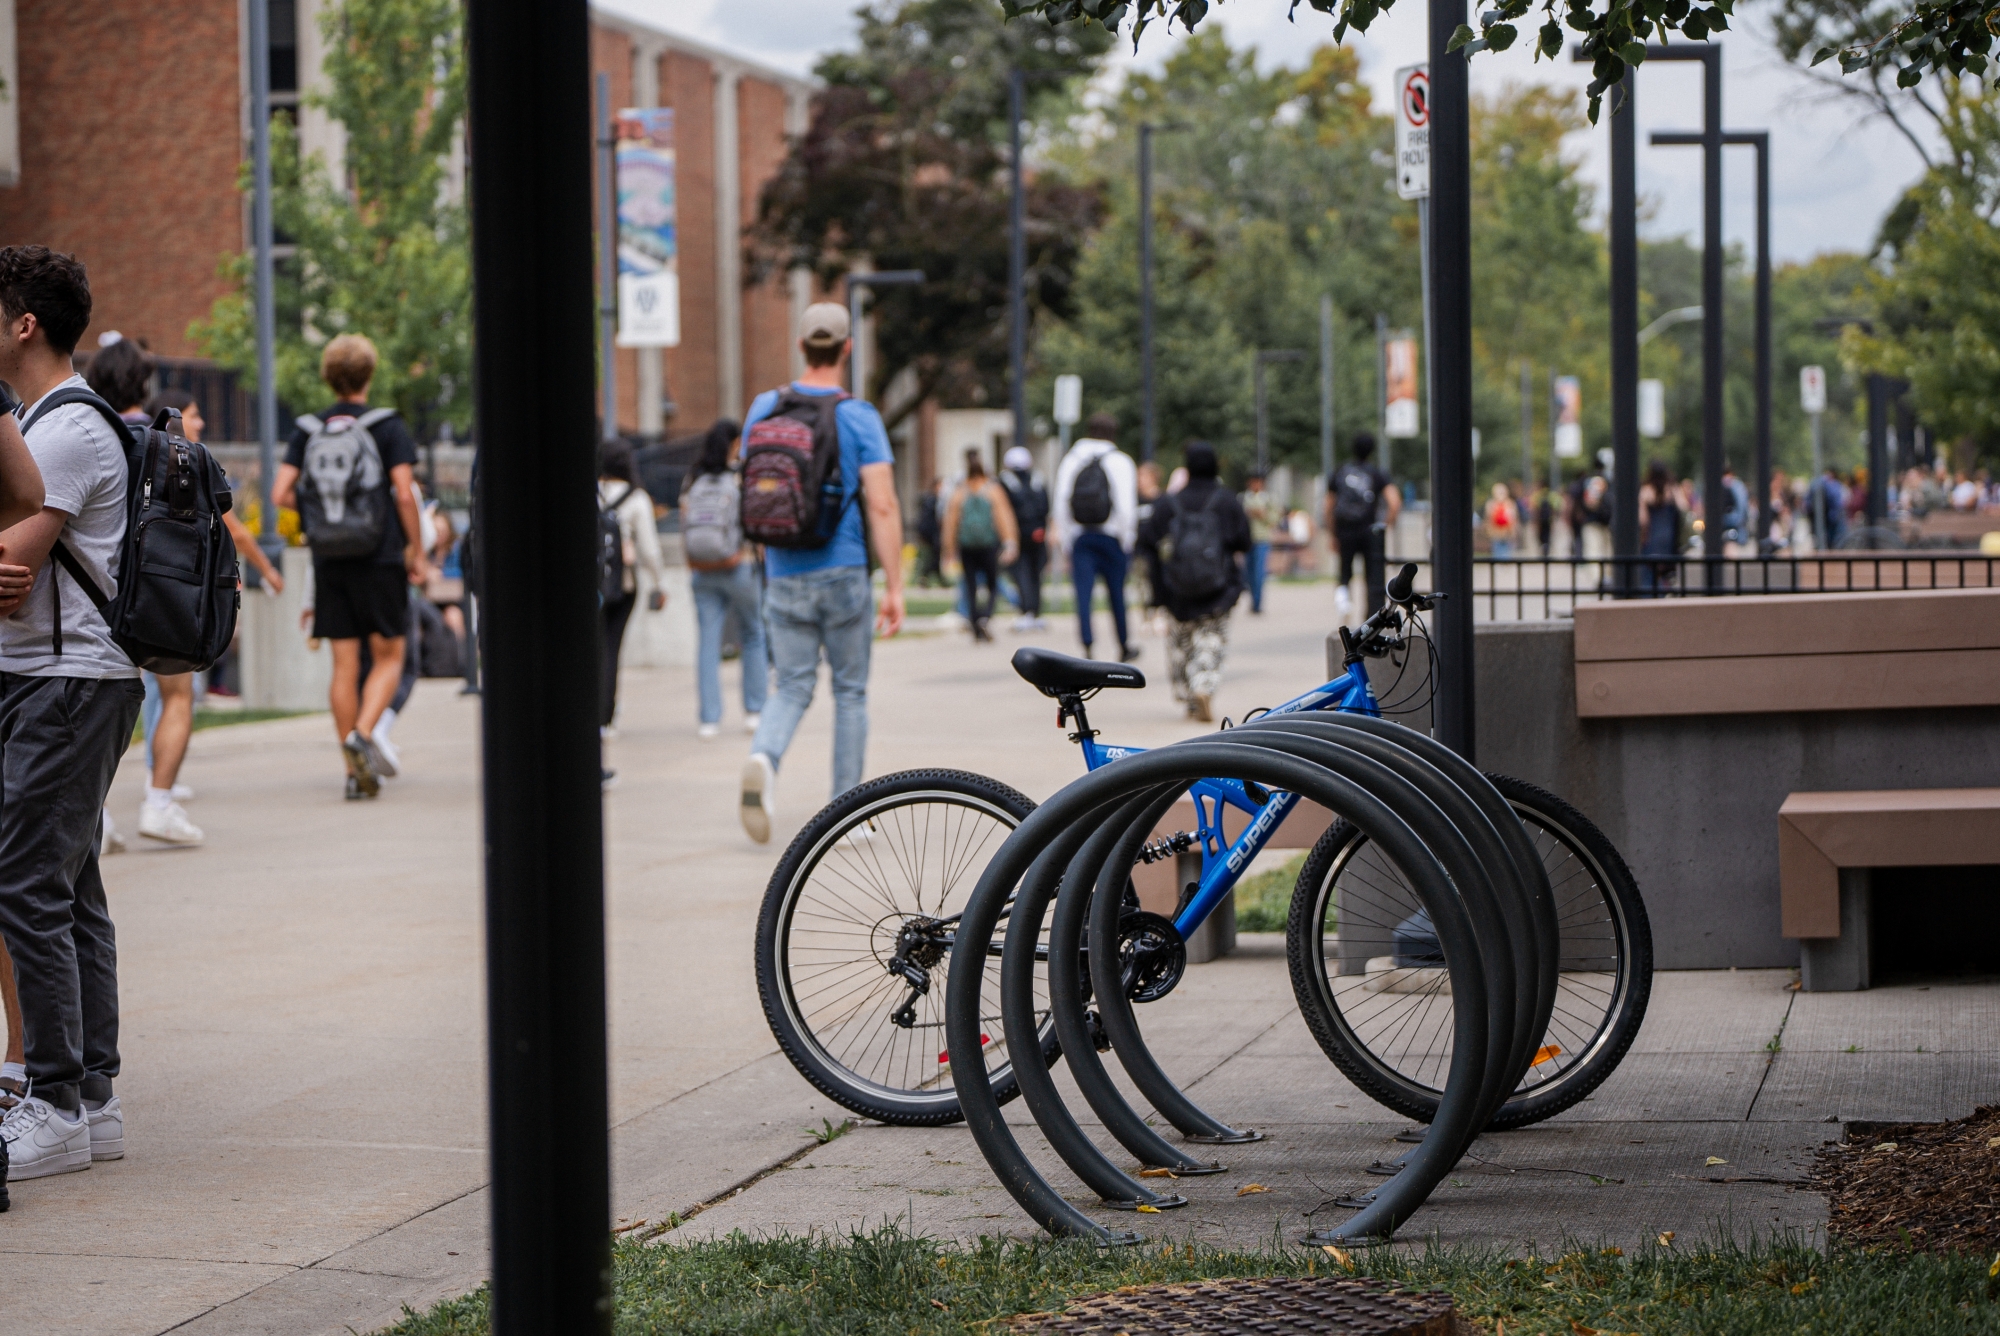 Bike Racks on Campus